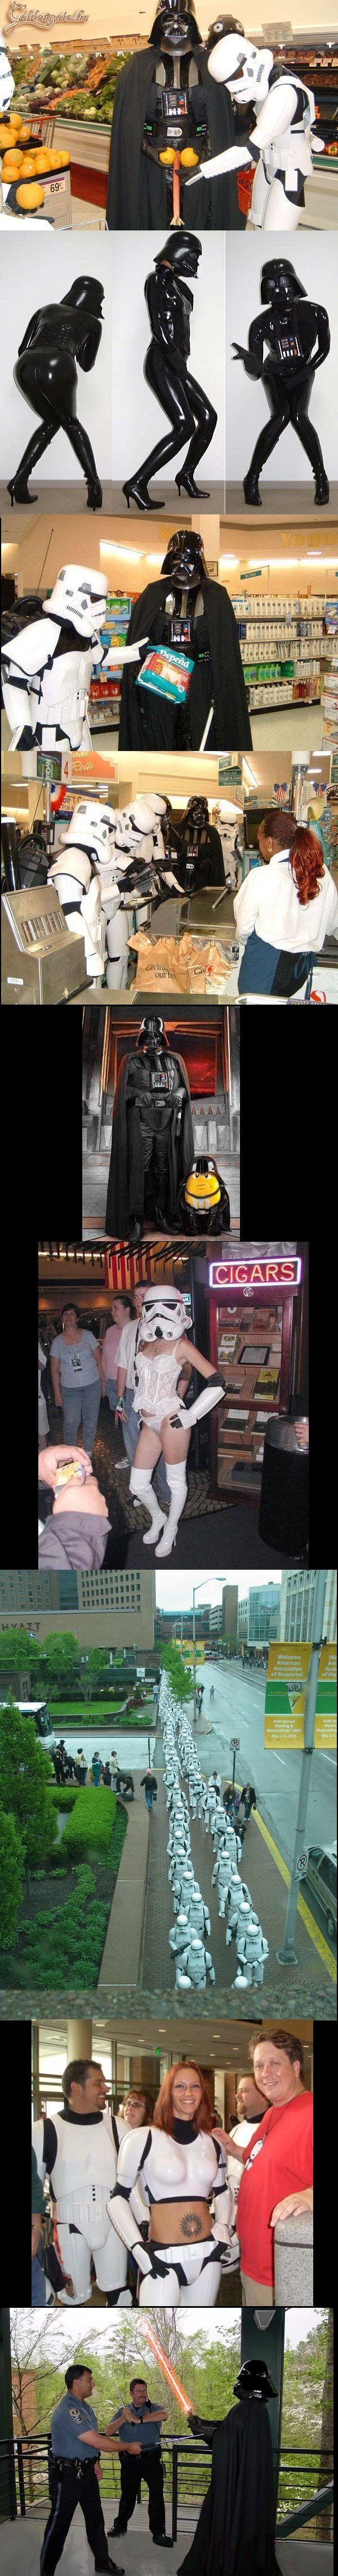 Darth Vader és a sötét oldal napjainkban...